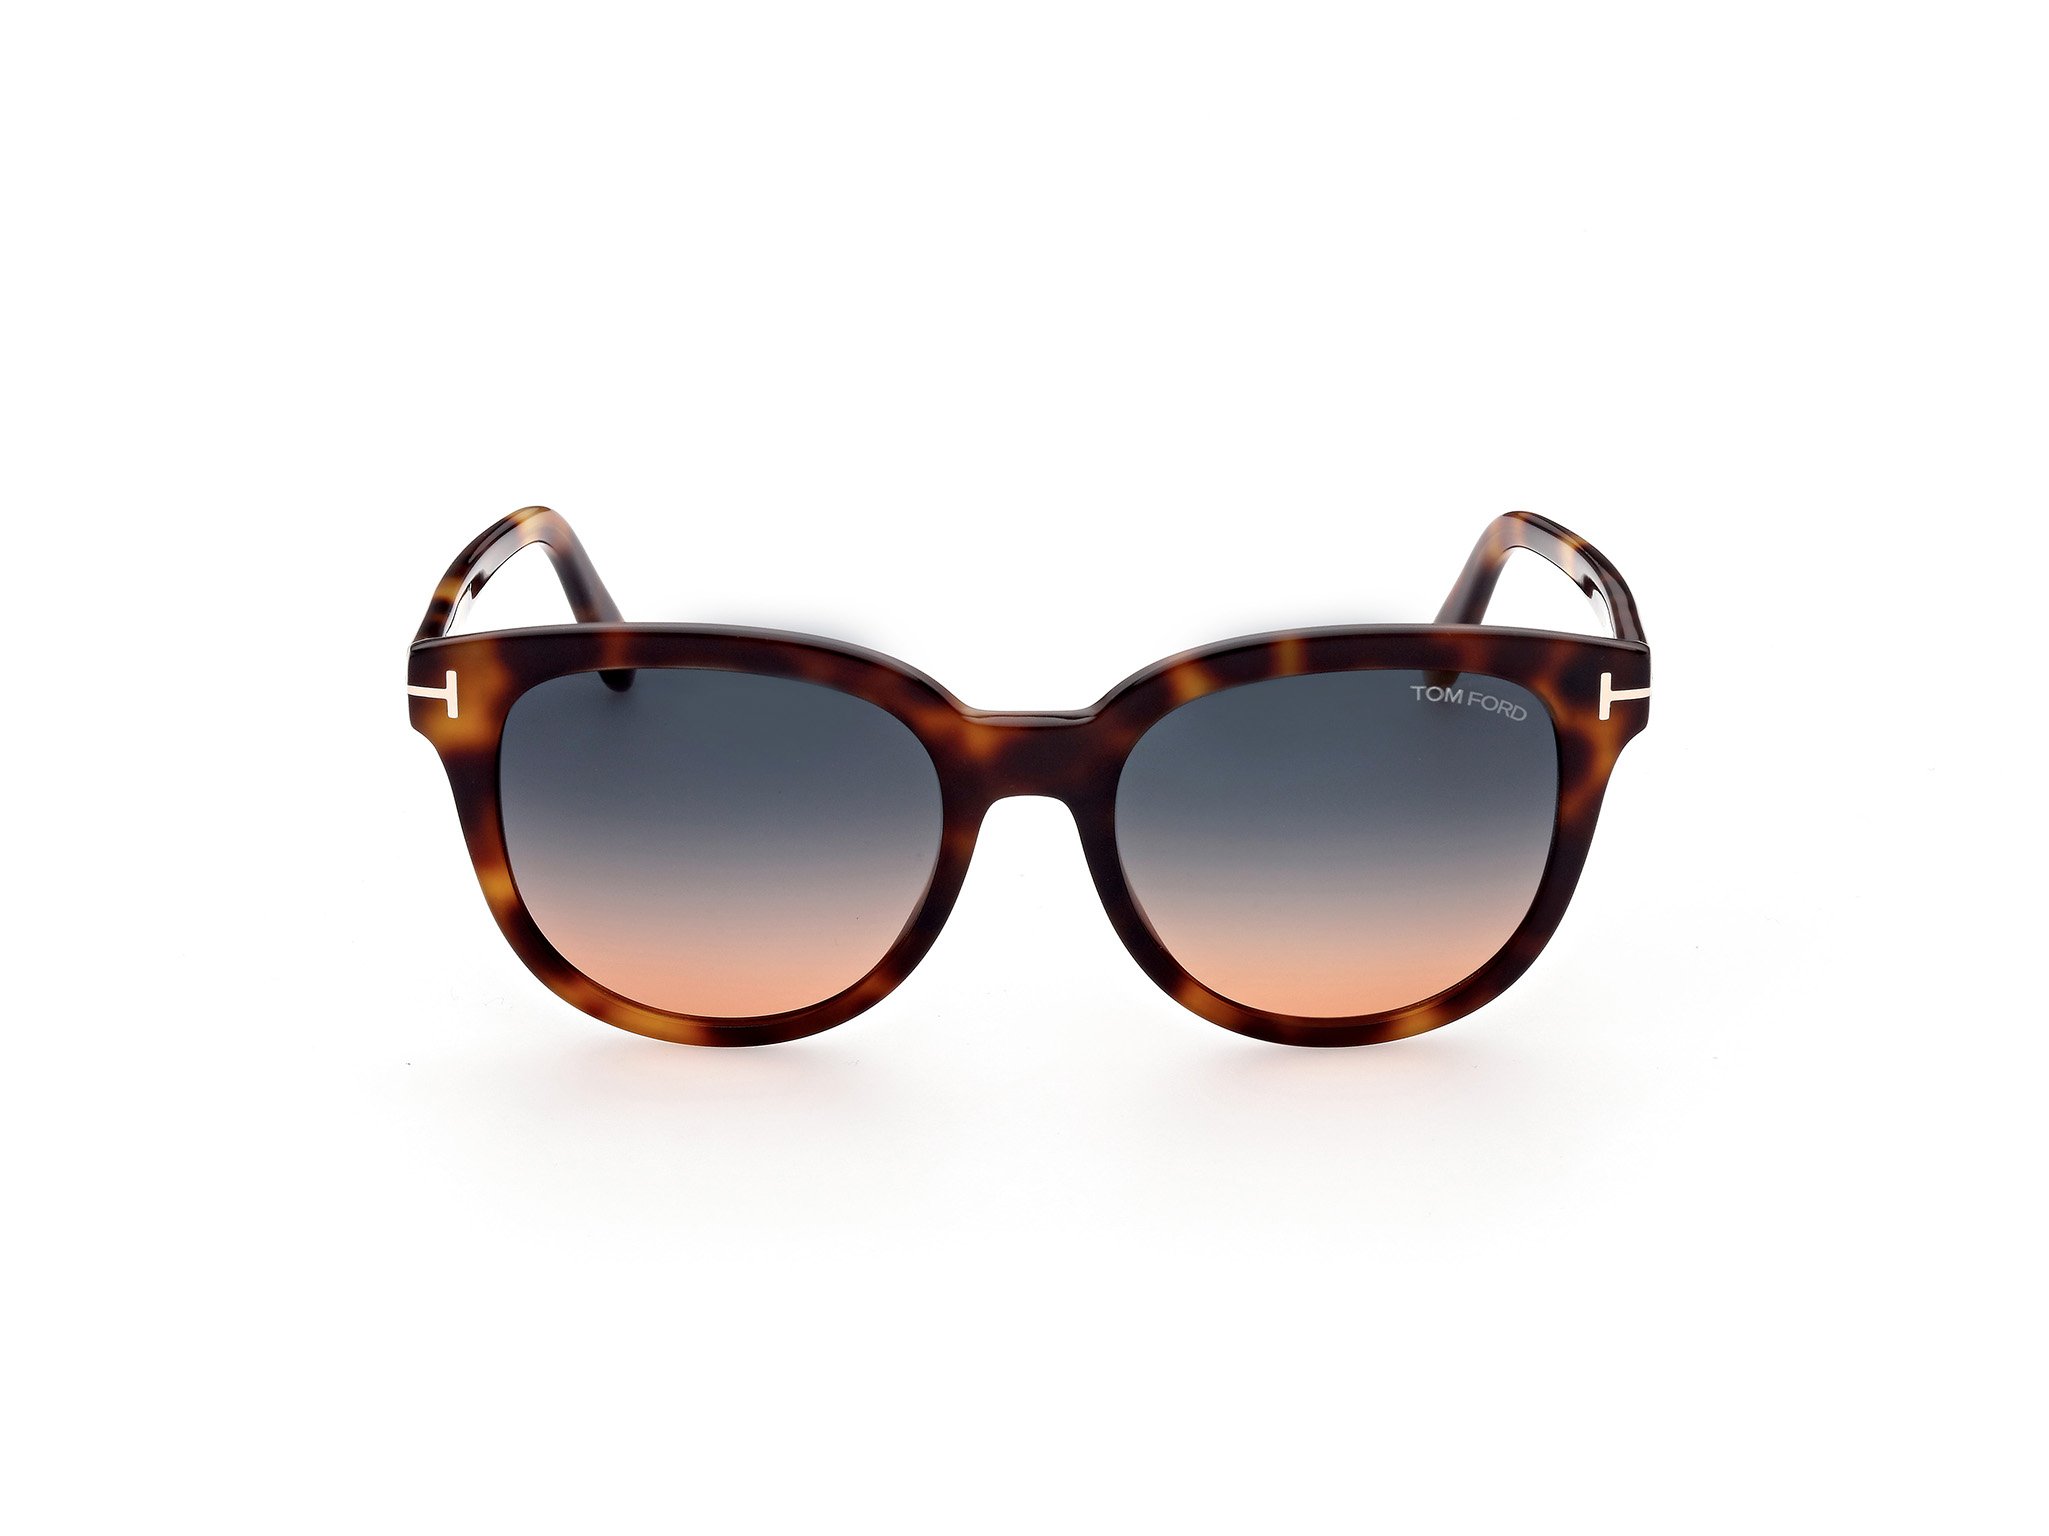 Das Bild zeigt die Sonnenbrille Sabrina FT0914 von der Marke Tom Ford in braun gemustert frontal